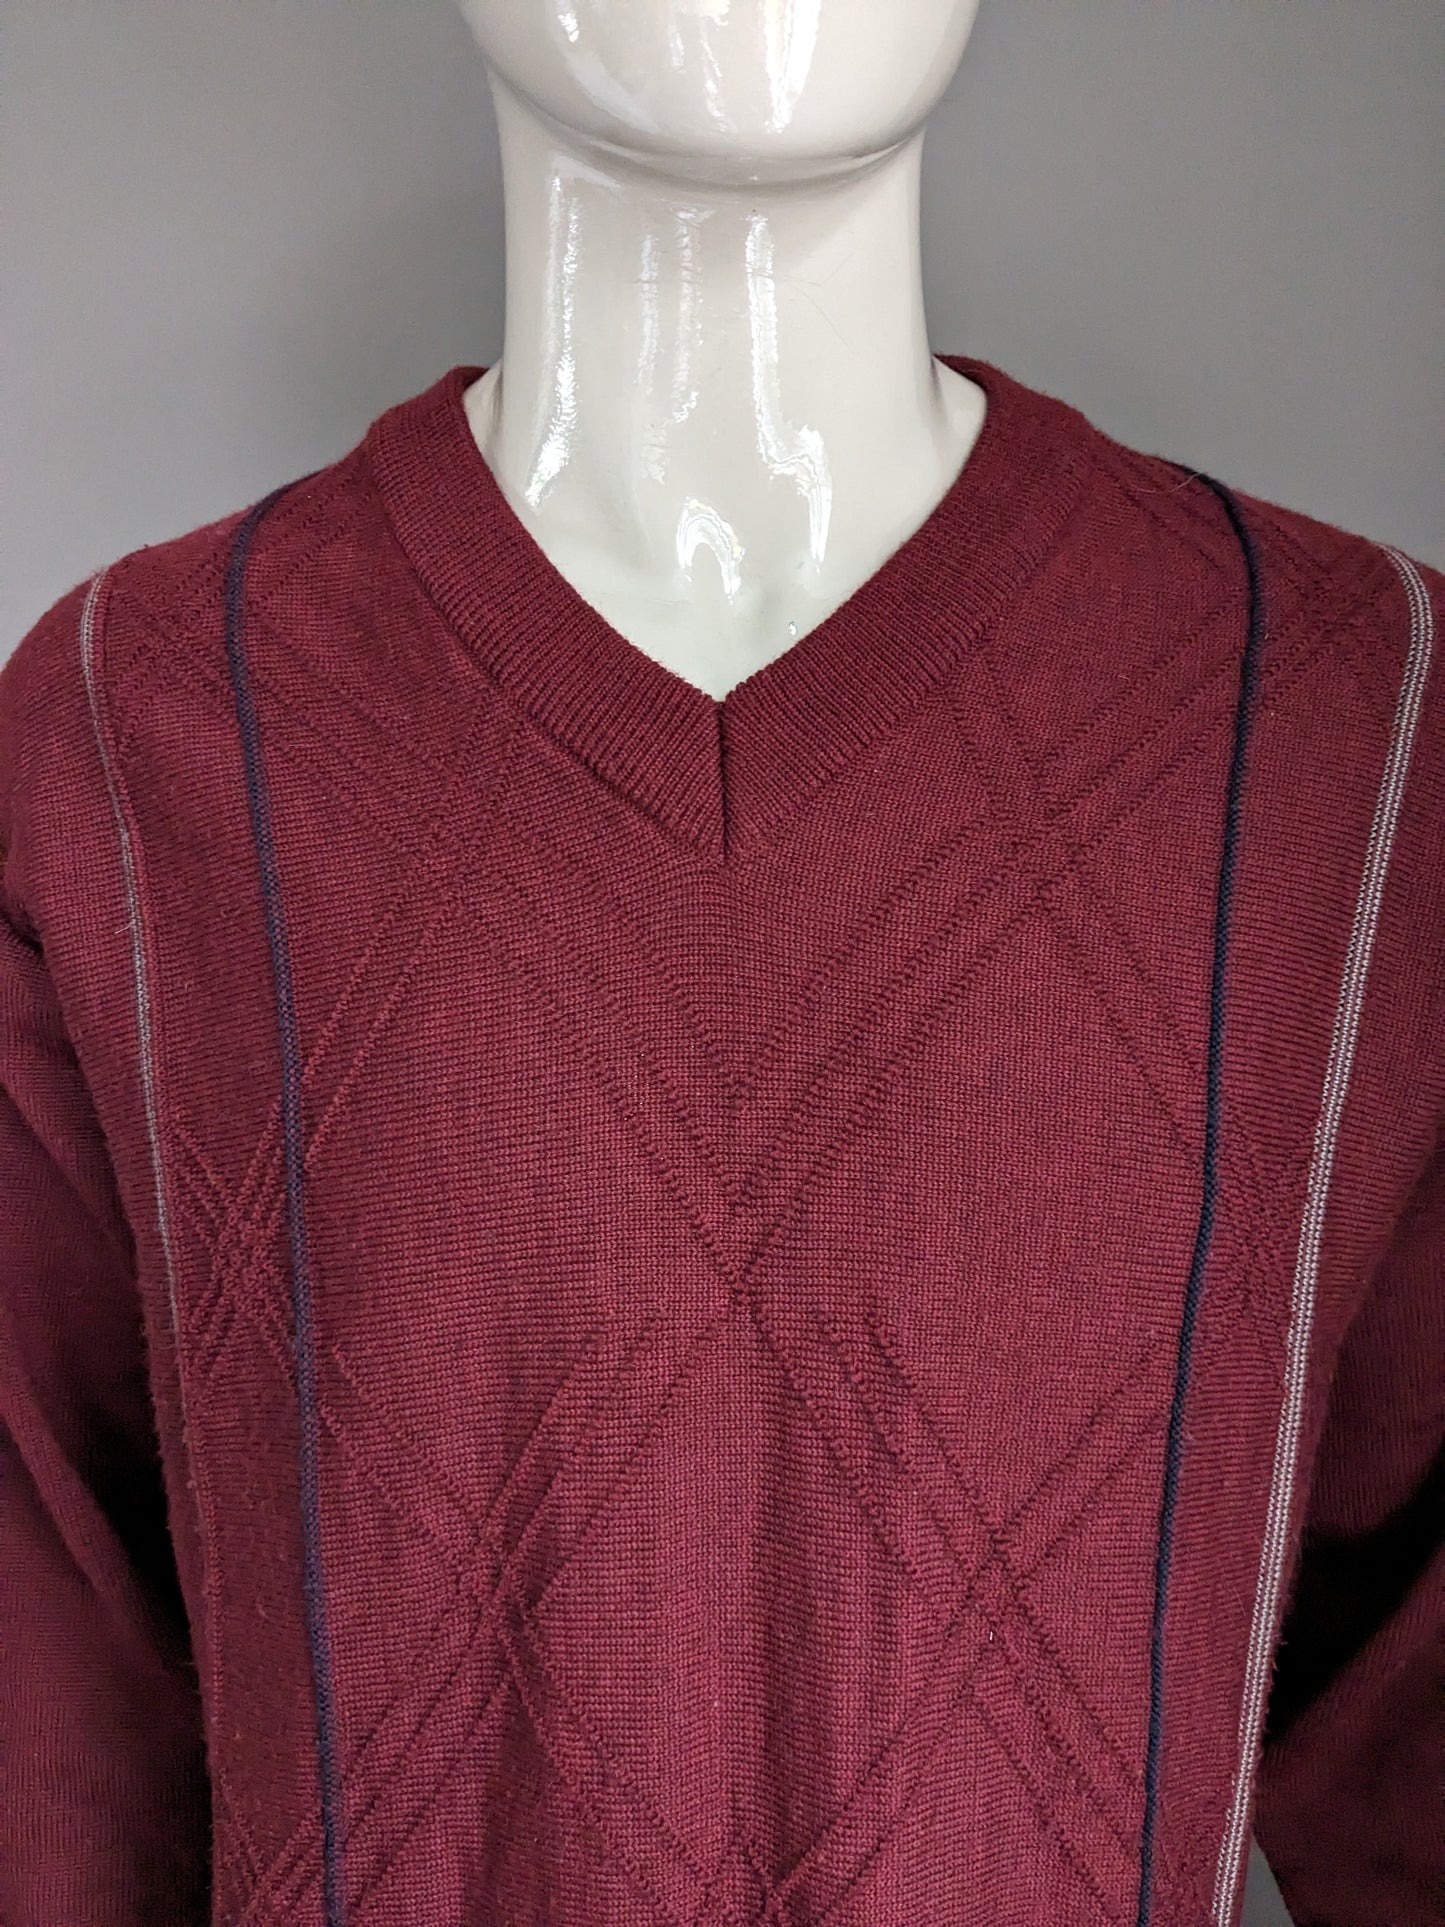 Suéter de lana Vintage Carlo Premera con cuello en V. Burdeos. Talla L.